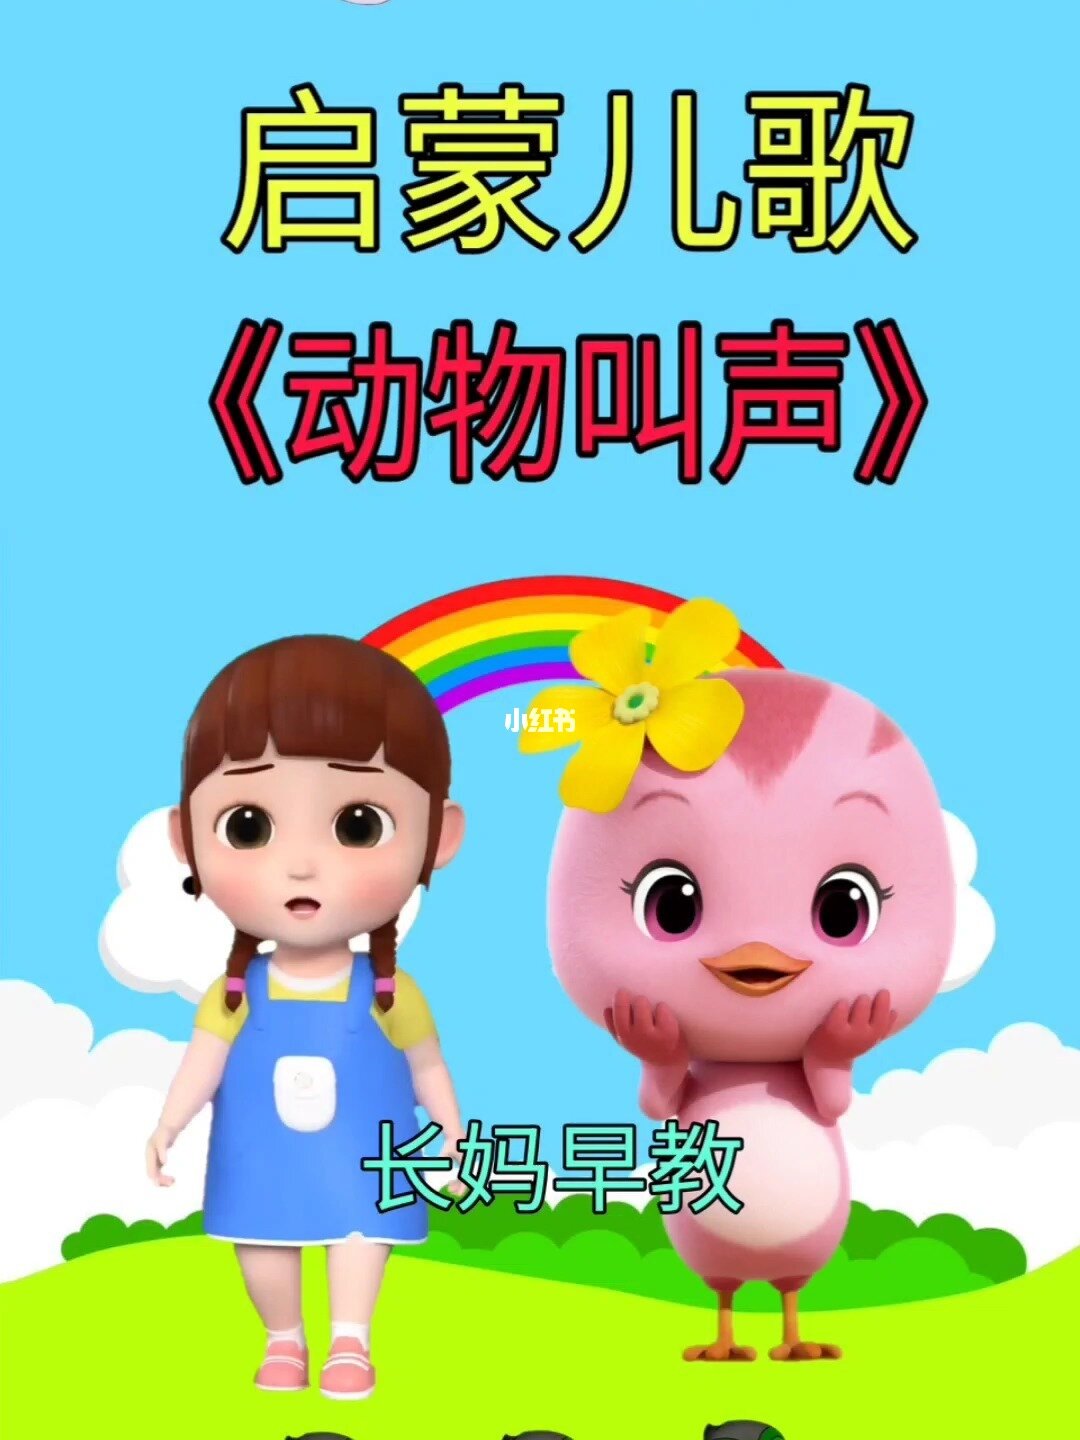 上海母婴连锁_上海童歌母婴用品有限公司_上海比较知名的母婴公司